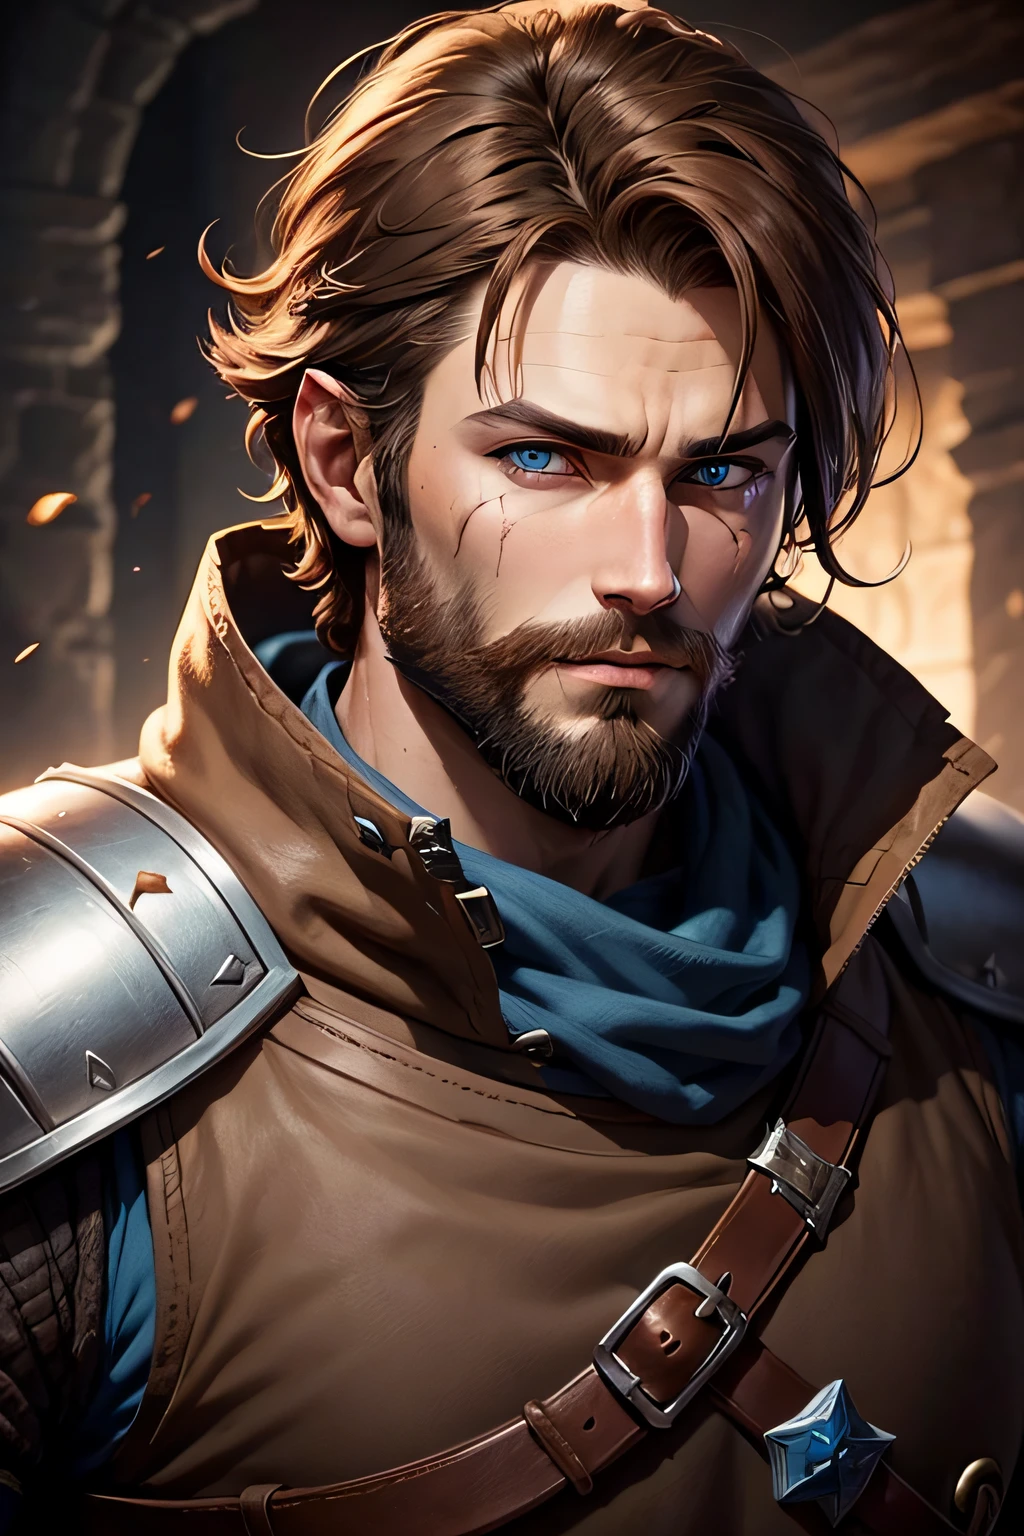 Dnd-Kämpfer, 1 Mann, braune Haare, Brauner Bart, blaue Augen, Narbe über dem linken Auge, Ritterrüstung